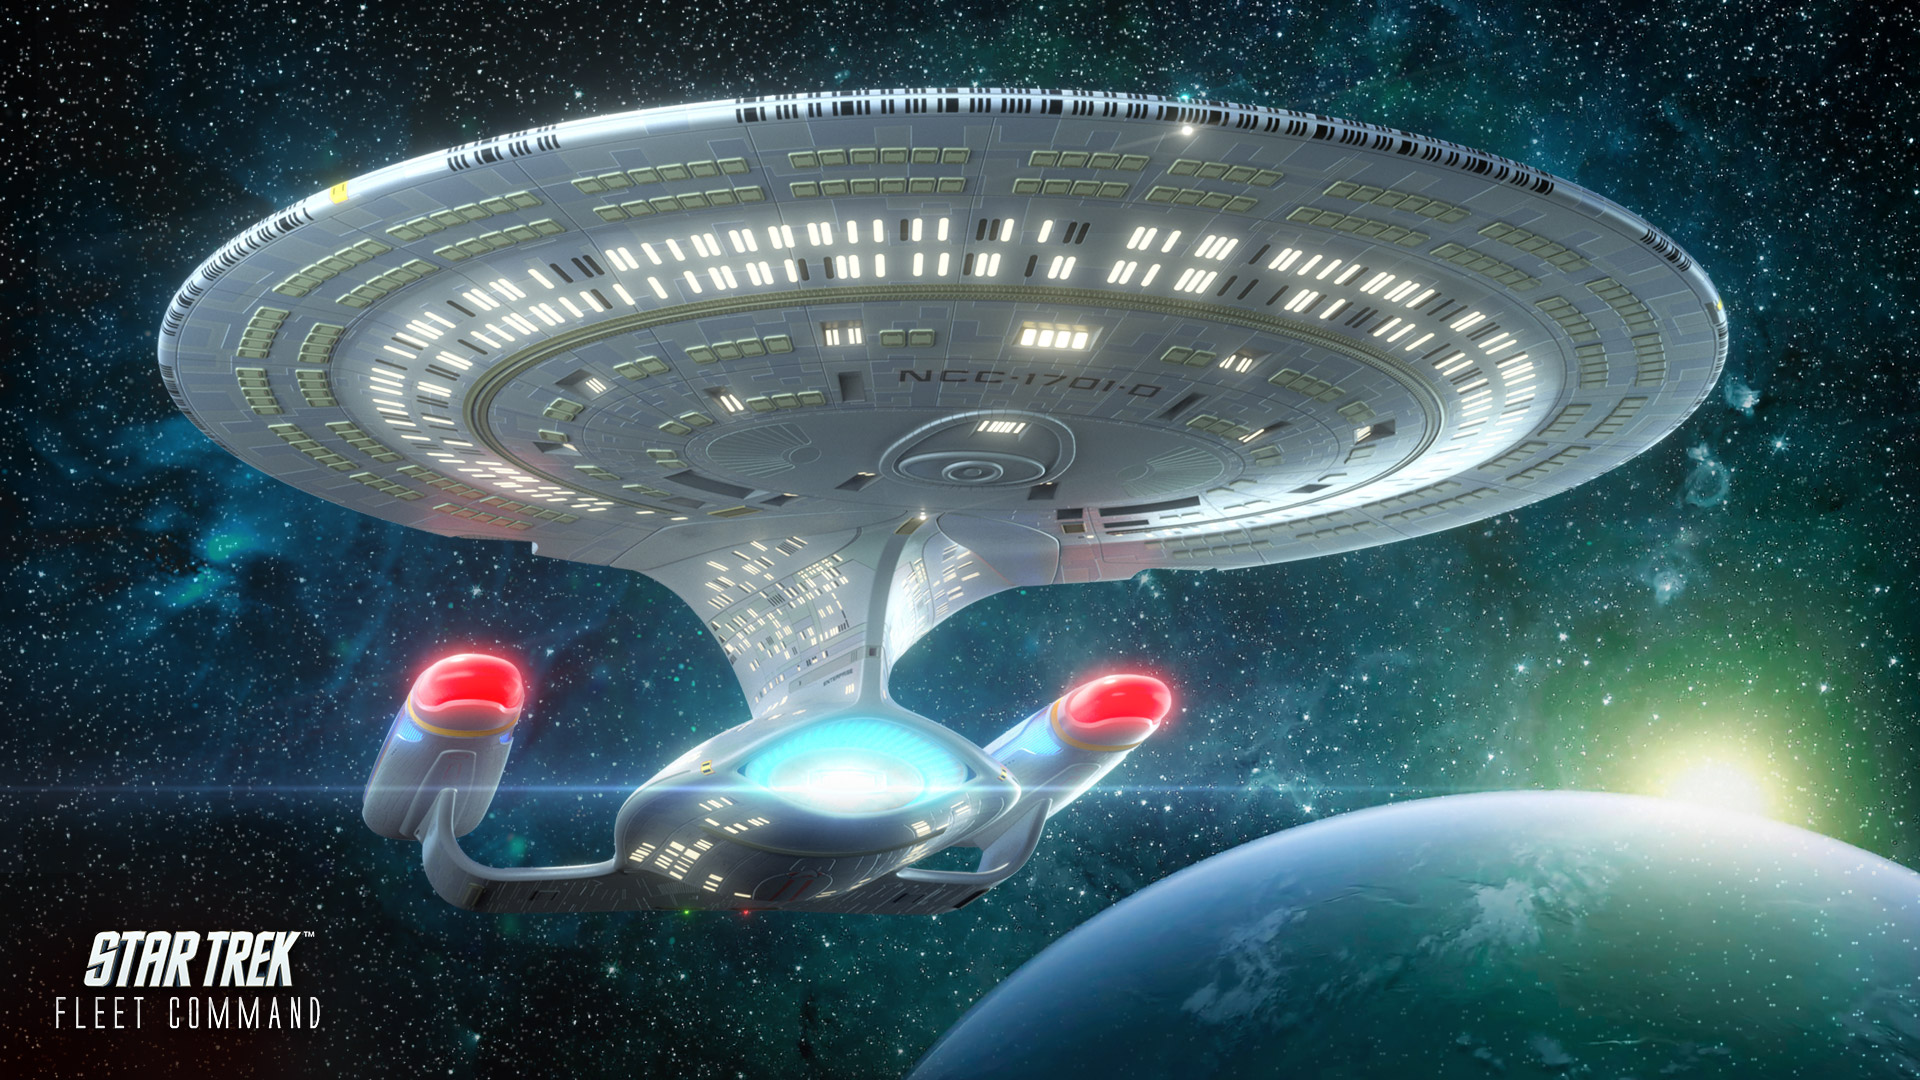 Star Trek Fleet Command  Play the Award-Winning PC & Mobile Game